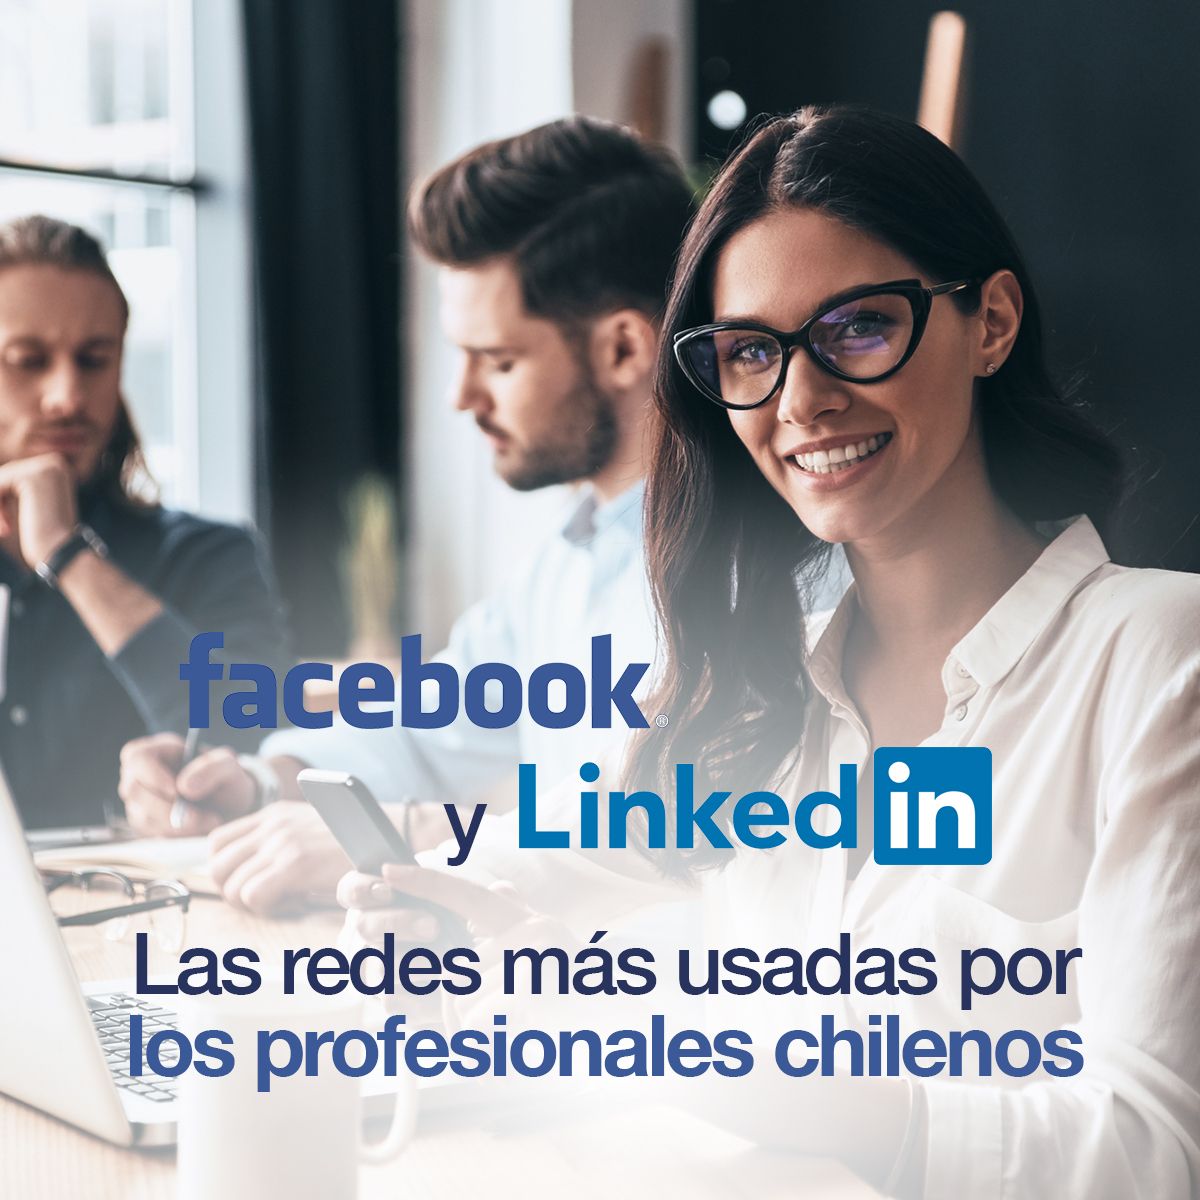 Facebook y Linkedin son las redes más usadas por los profesionales chilenos